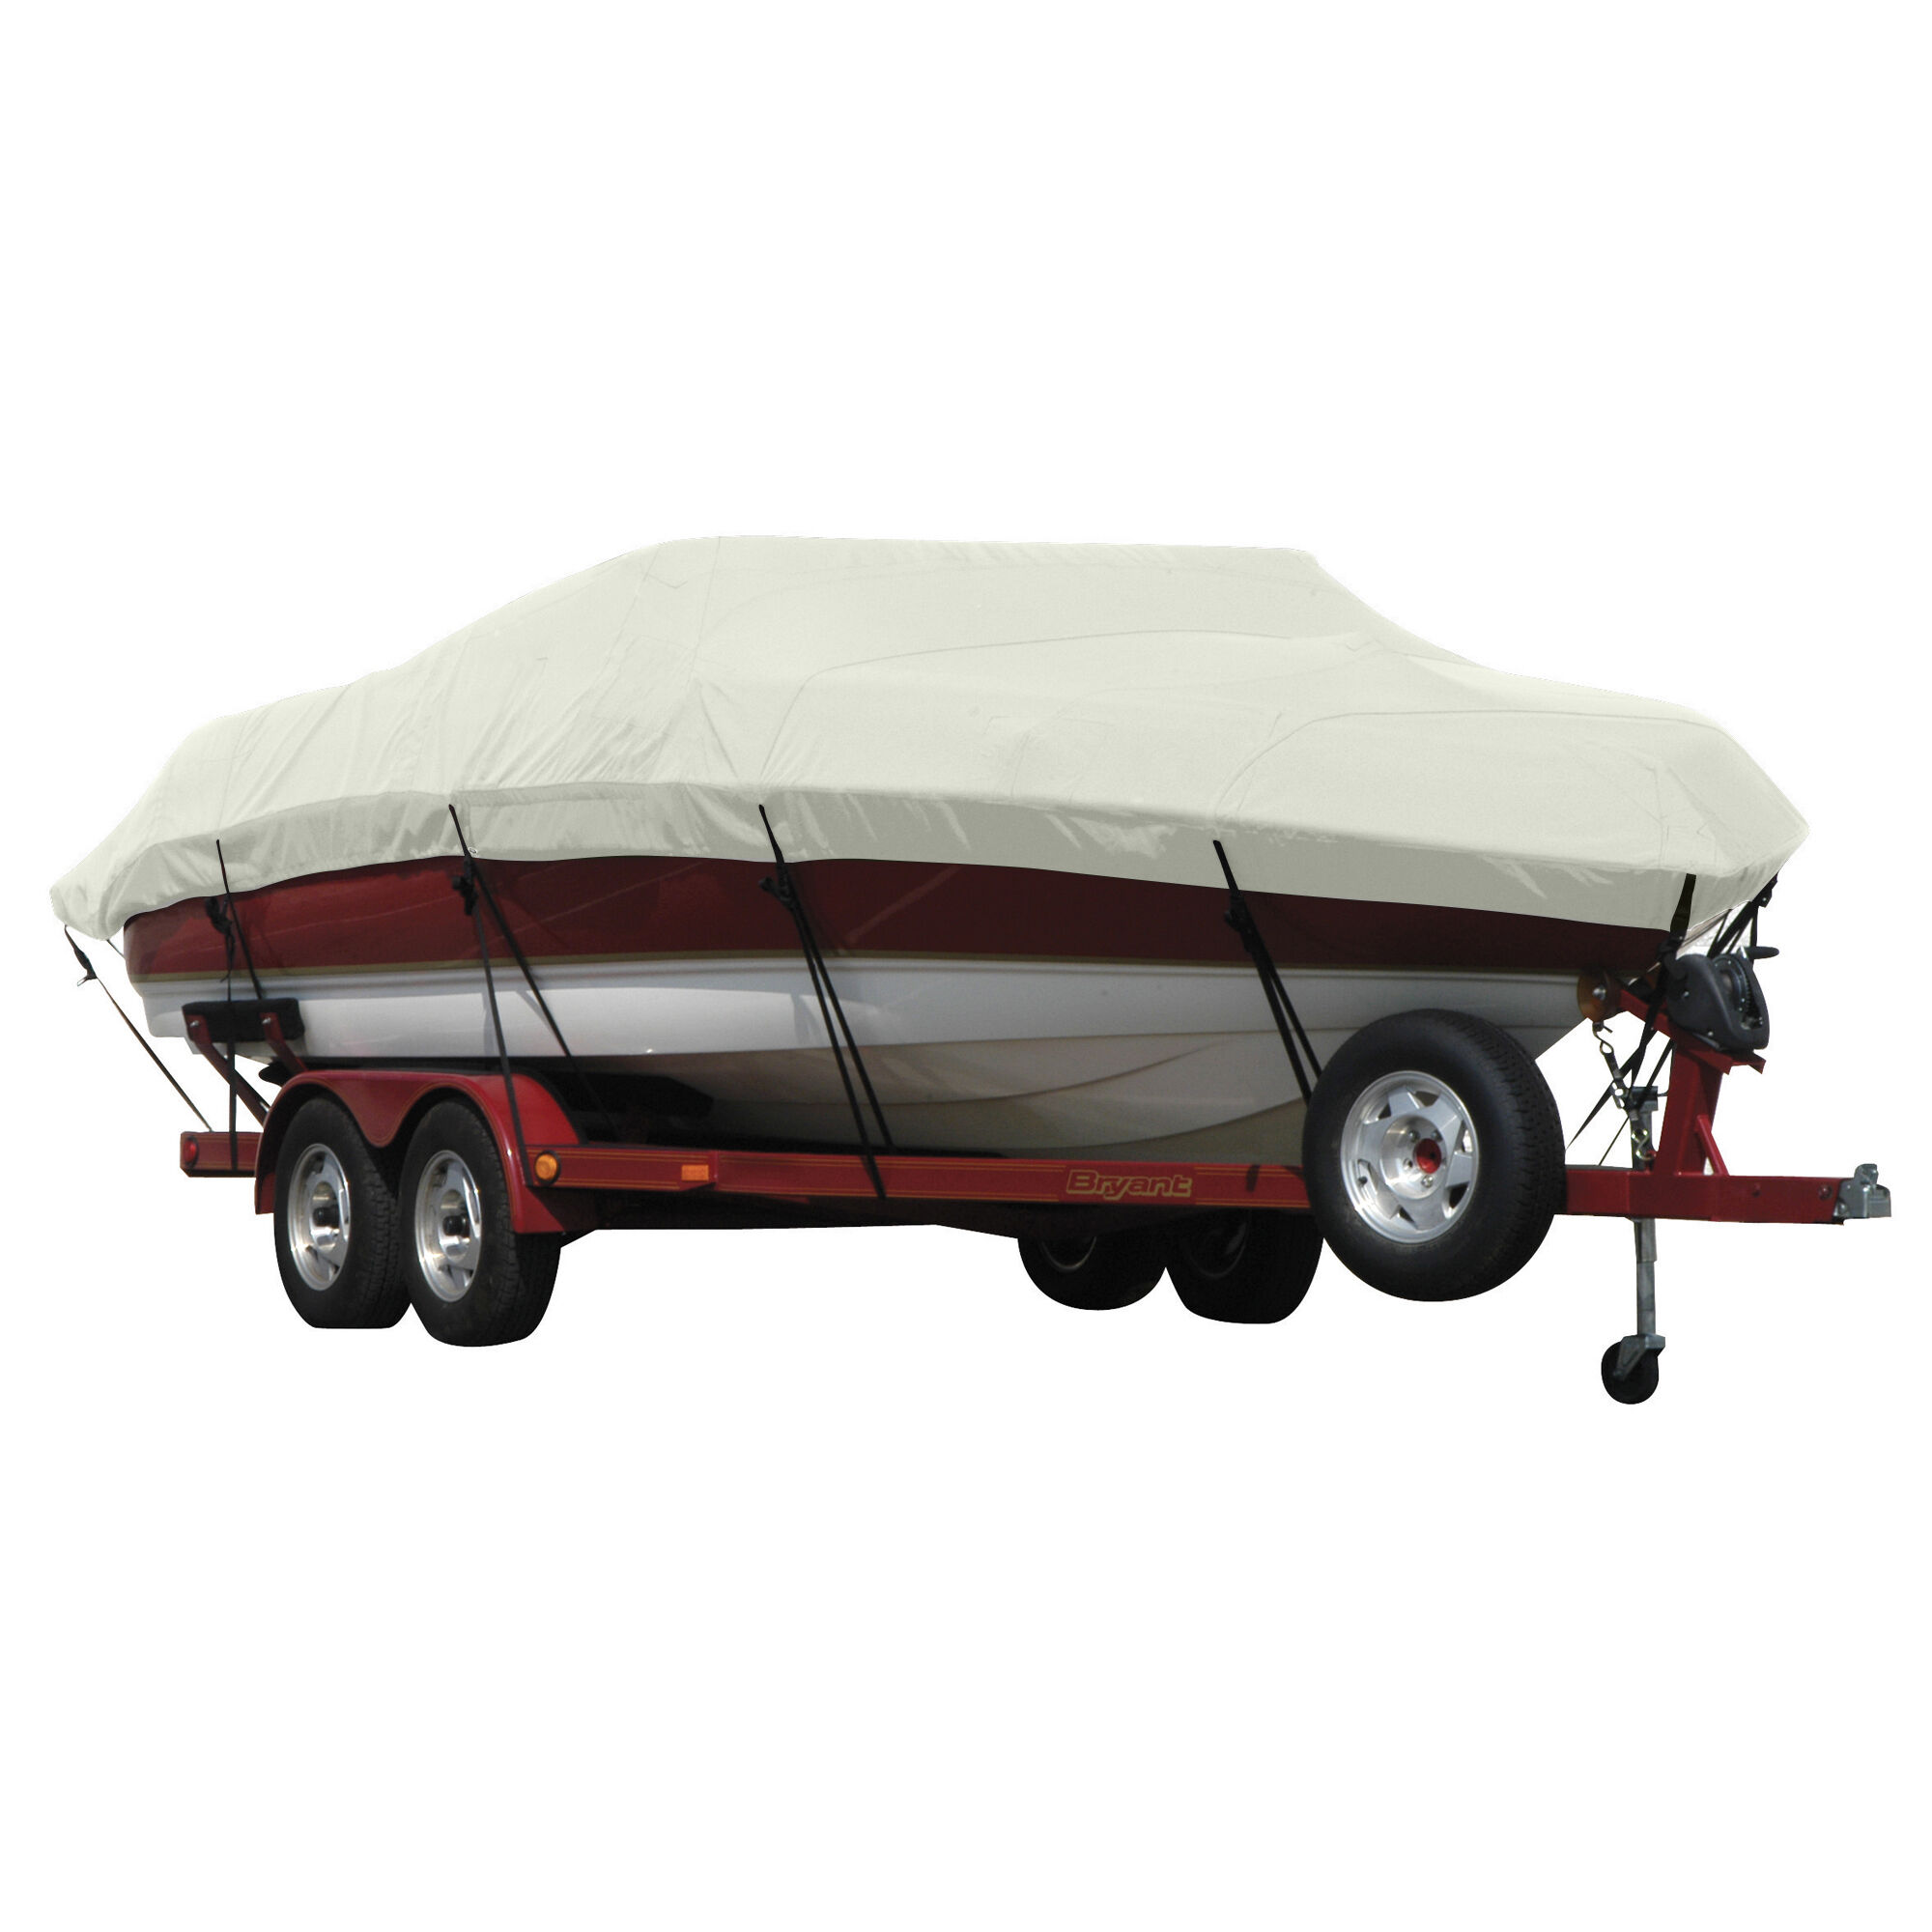 Covermate Exact Fit Sunbrella Boat Cover for Seaswirl Striper 2100 Striper 2100 Hard Top O/B. Silver